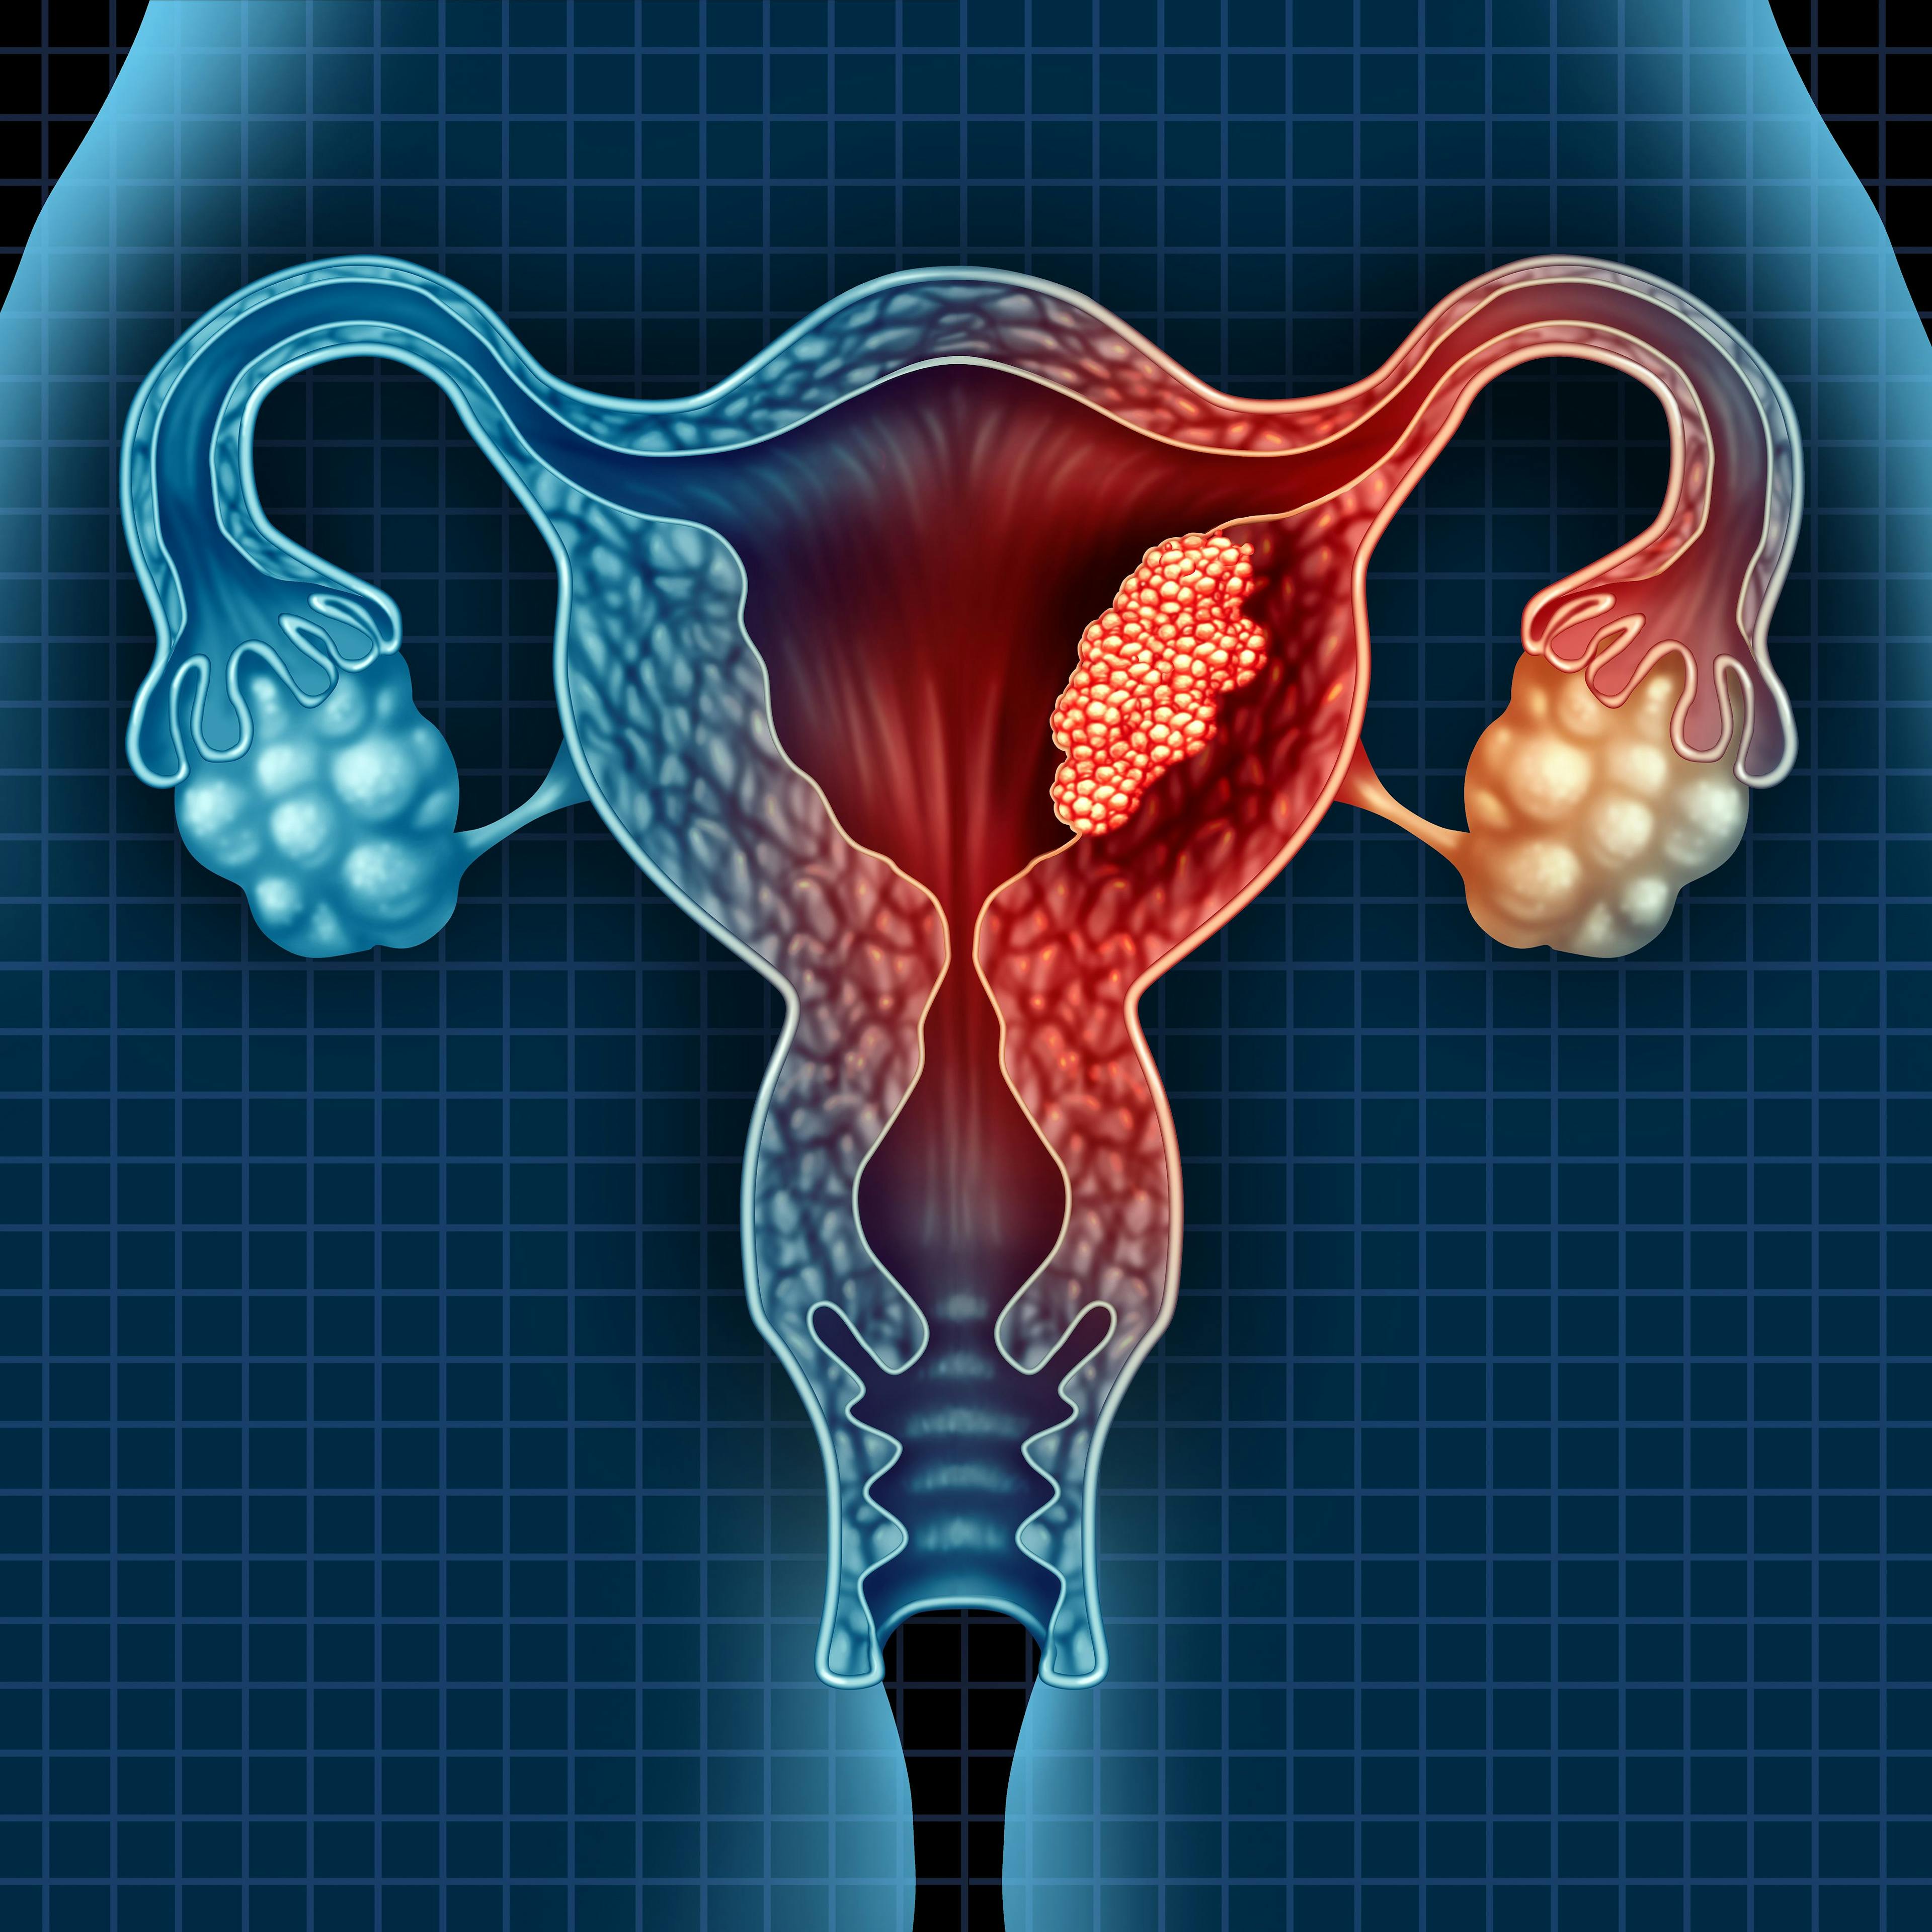 Endometrial cancer: ©freshidea - stock.adobe.com